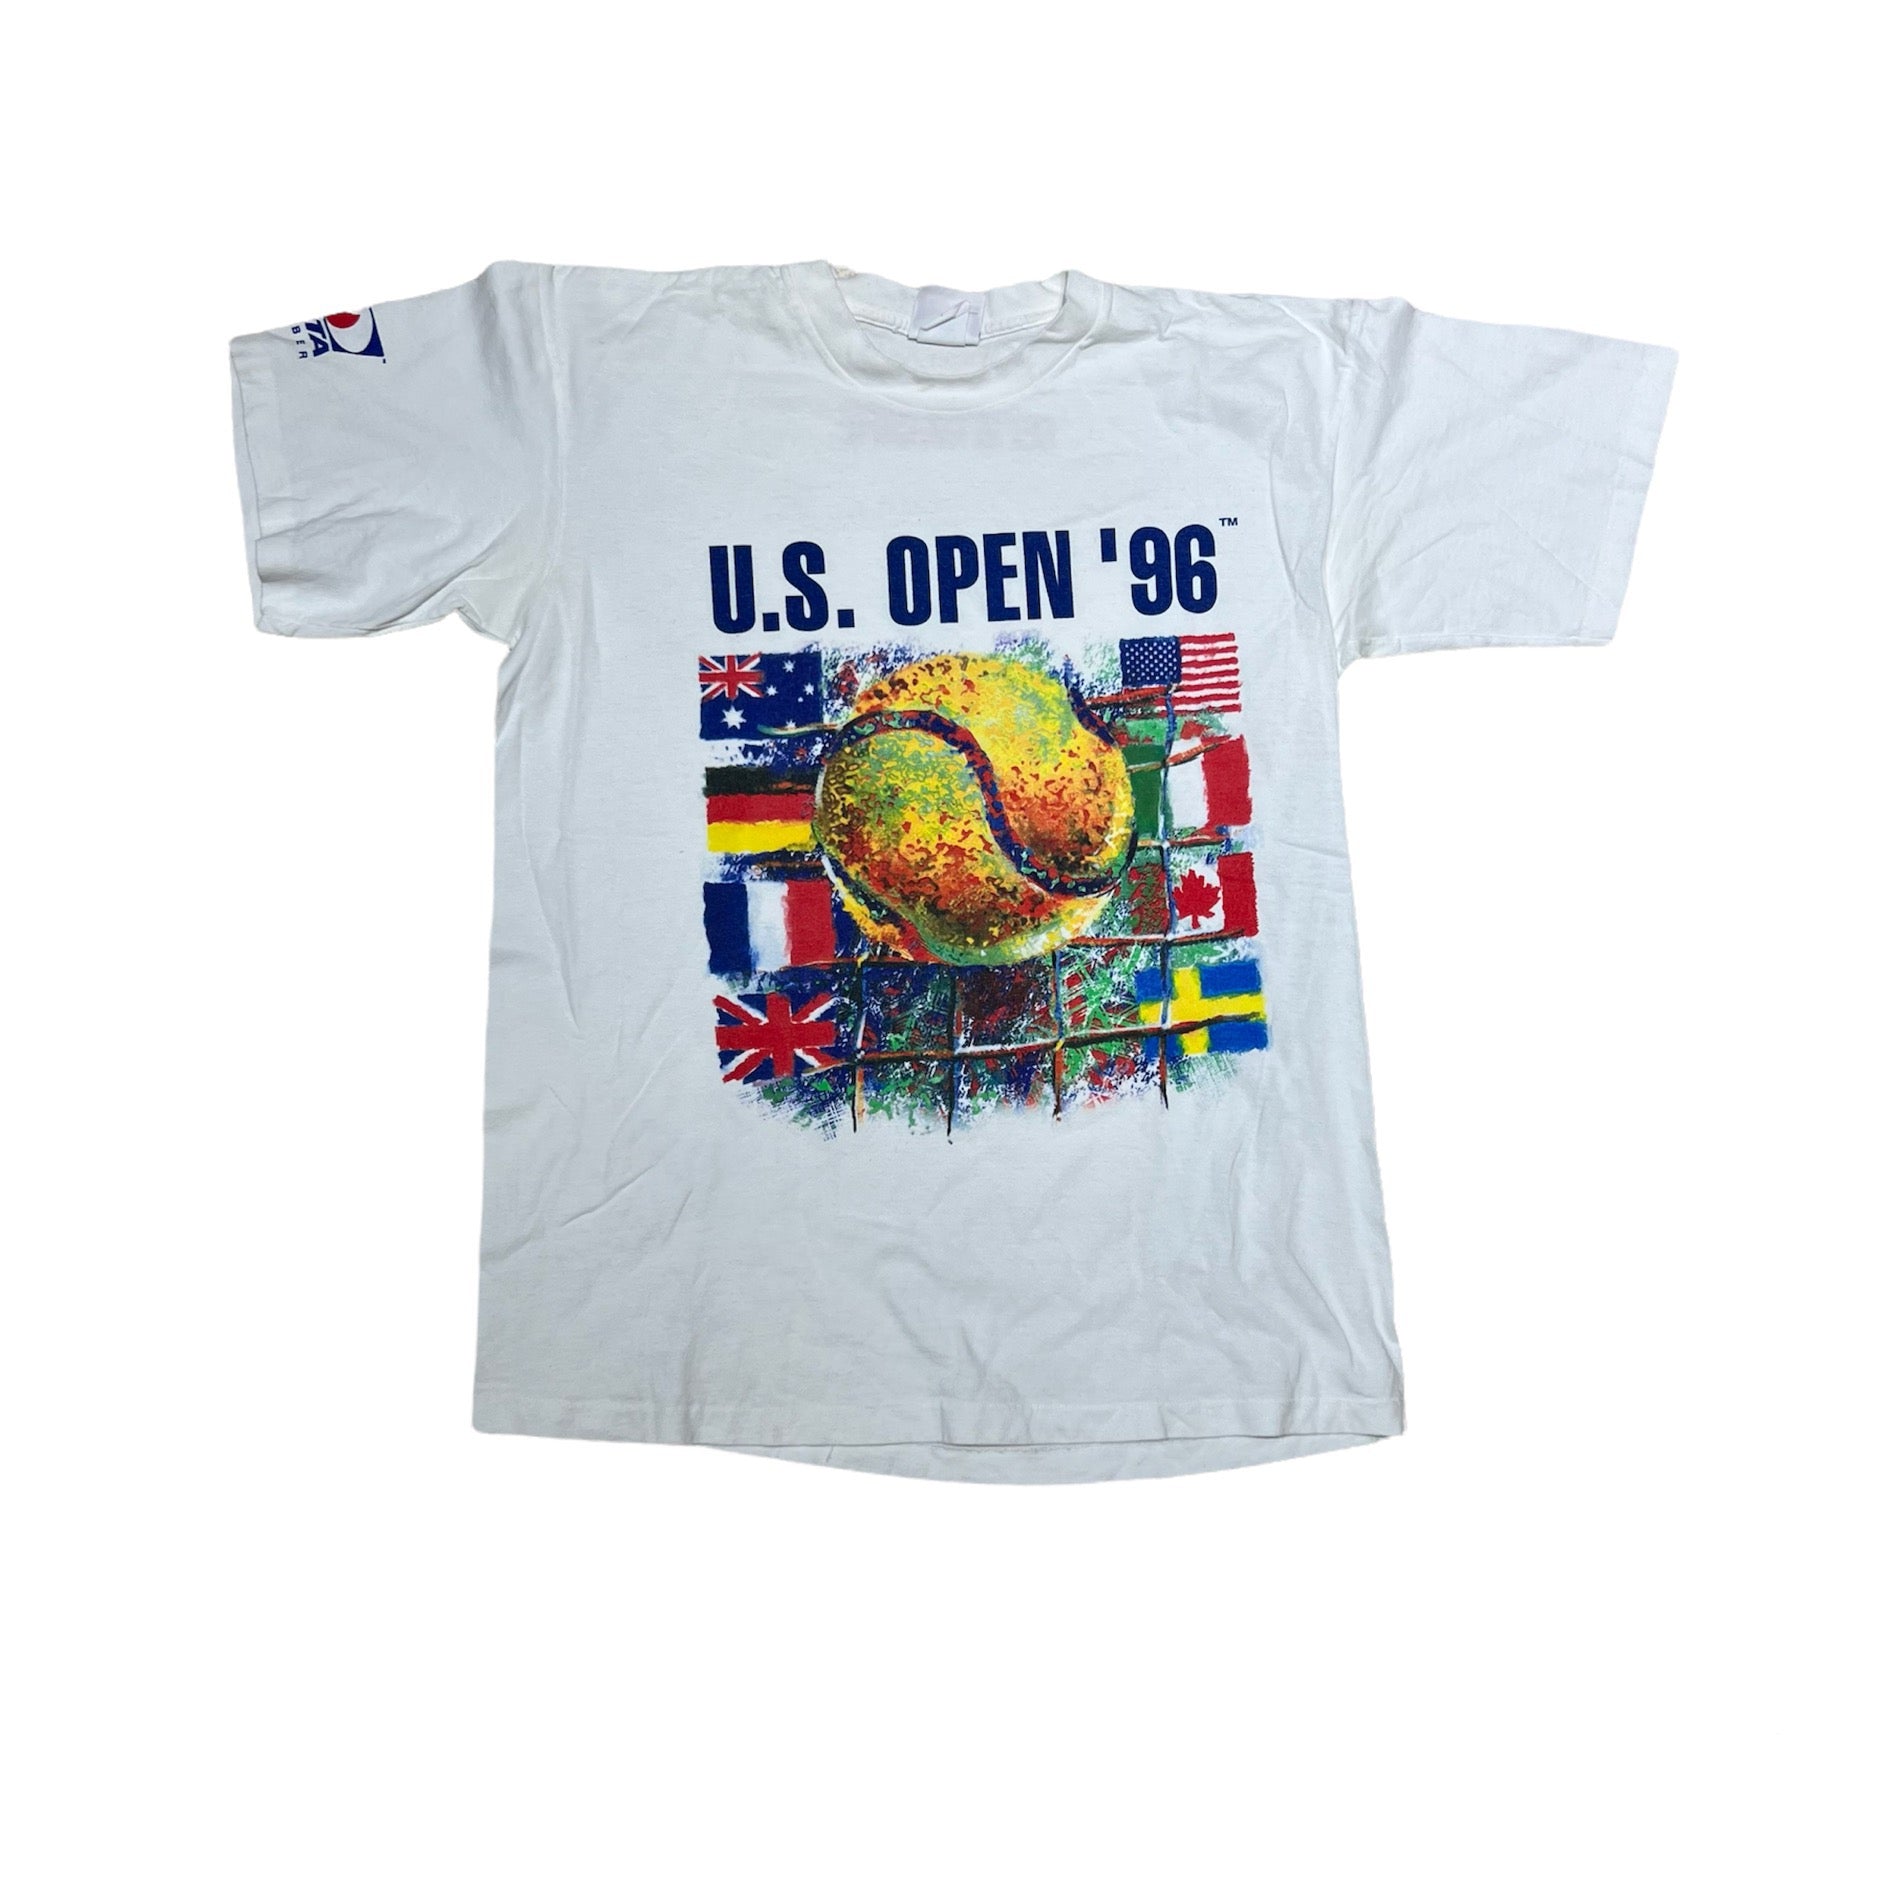 1996 U.S. OPEN TEE (LR)